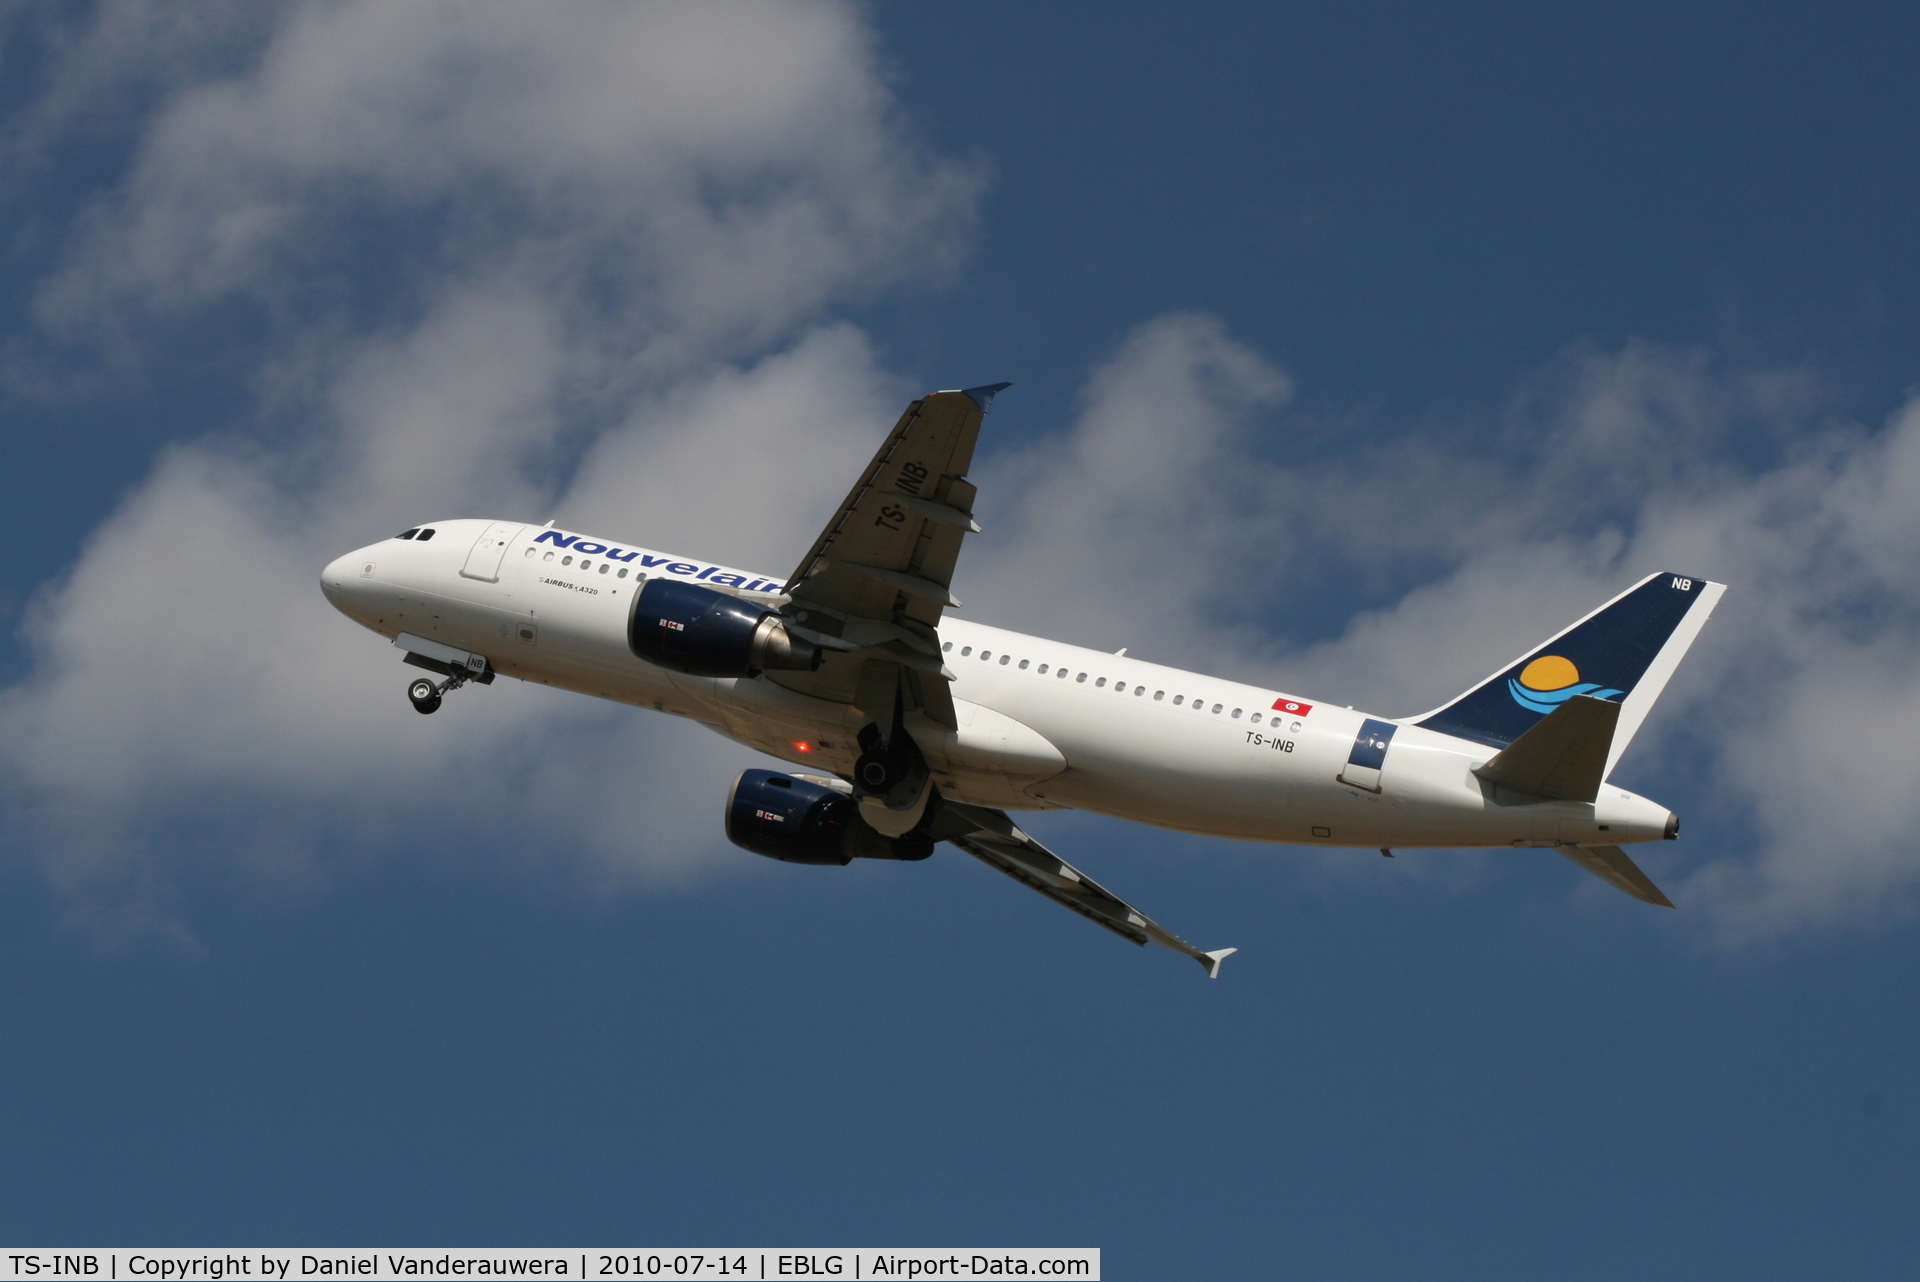 TS-INB, 2000 Airbus A320-214 C/N 1175, Flight LBT5131 is taking off from RWY 23L